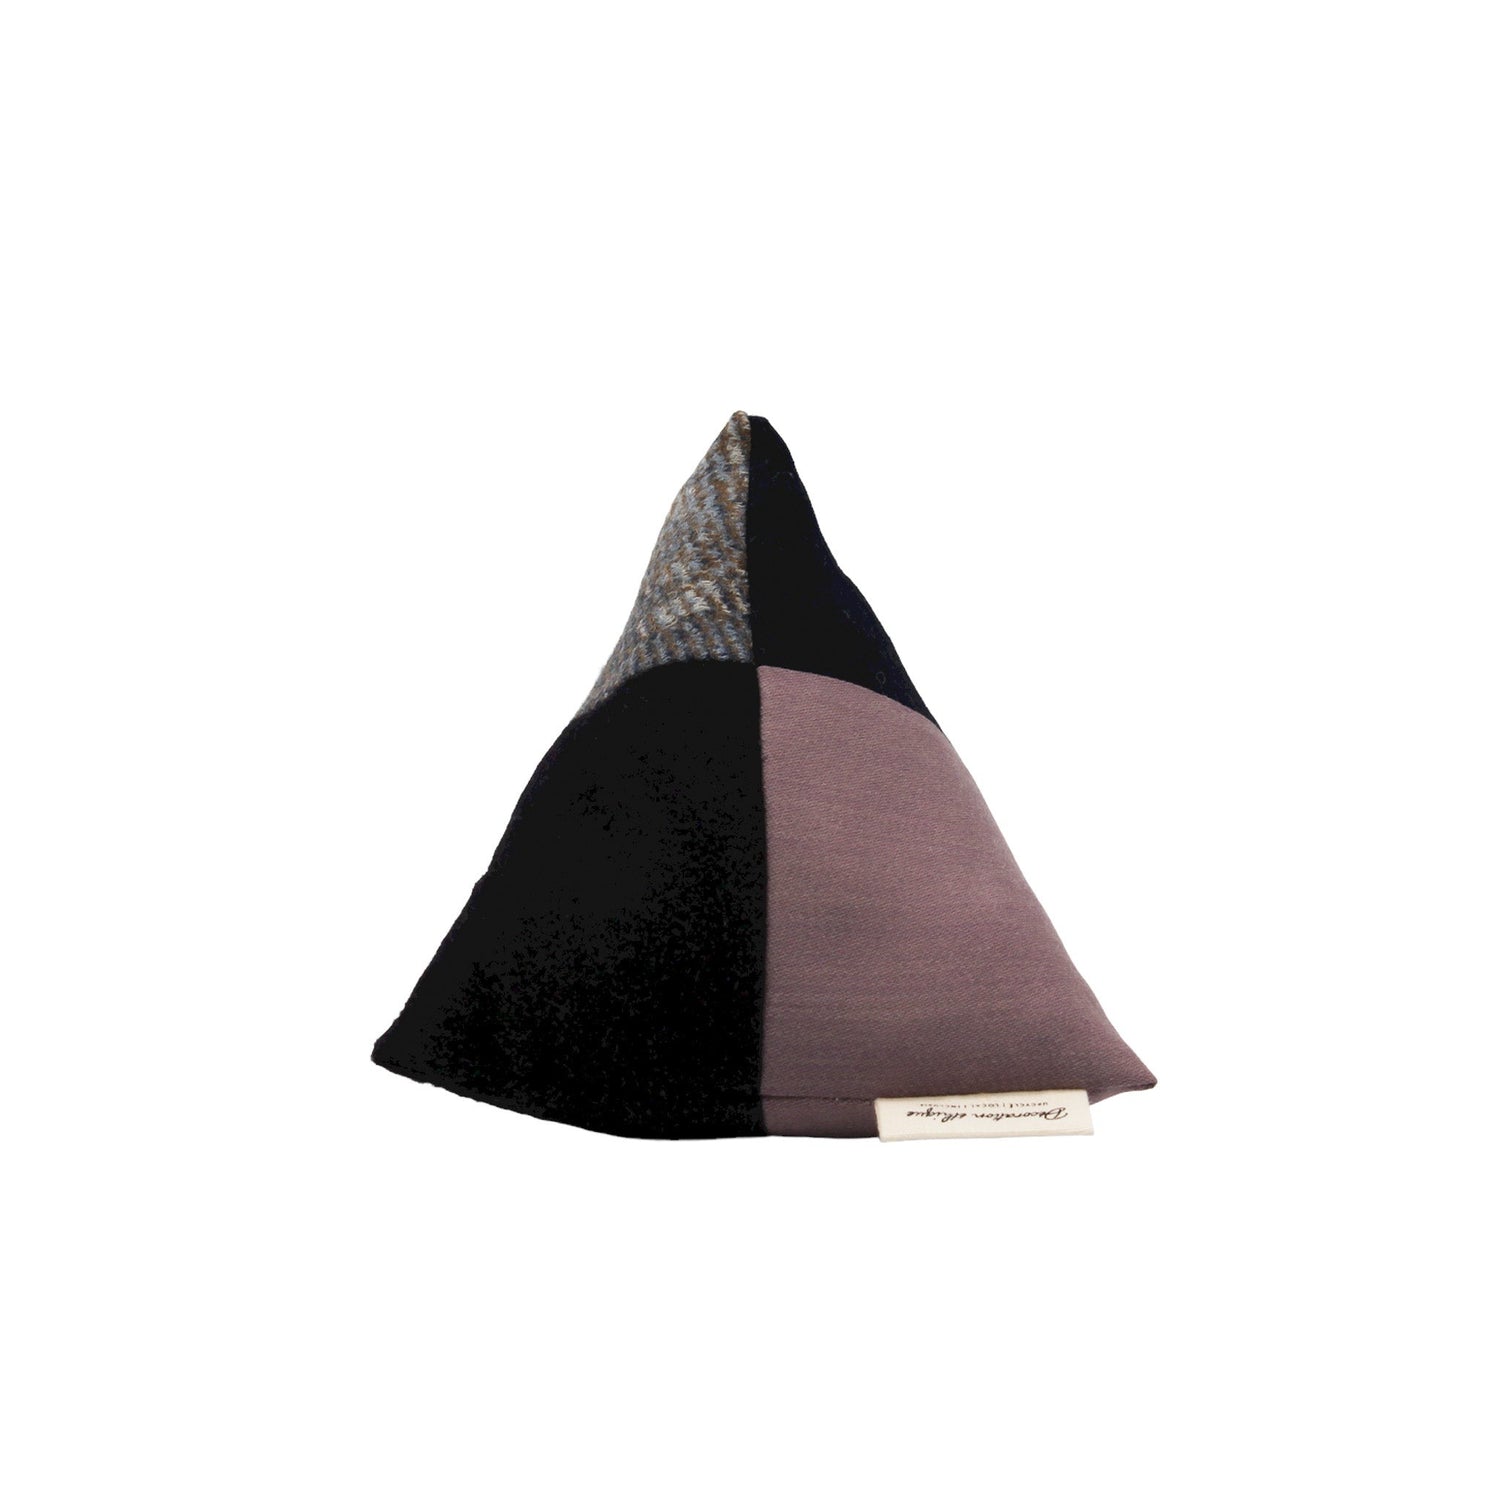  Coussin triangulaire violet et noir à motifs - Uli  